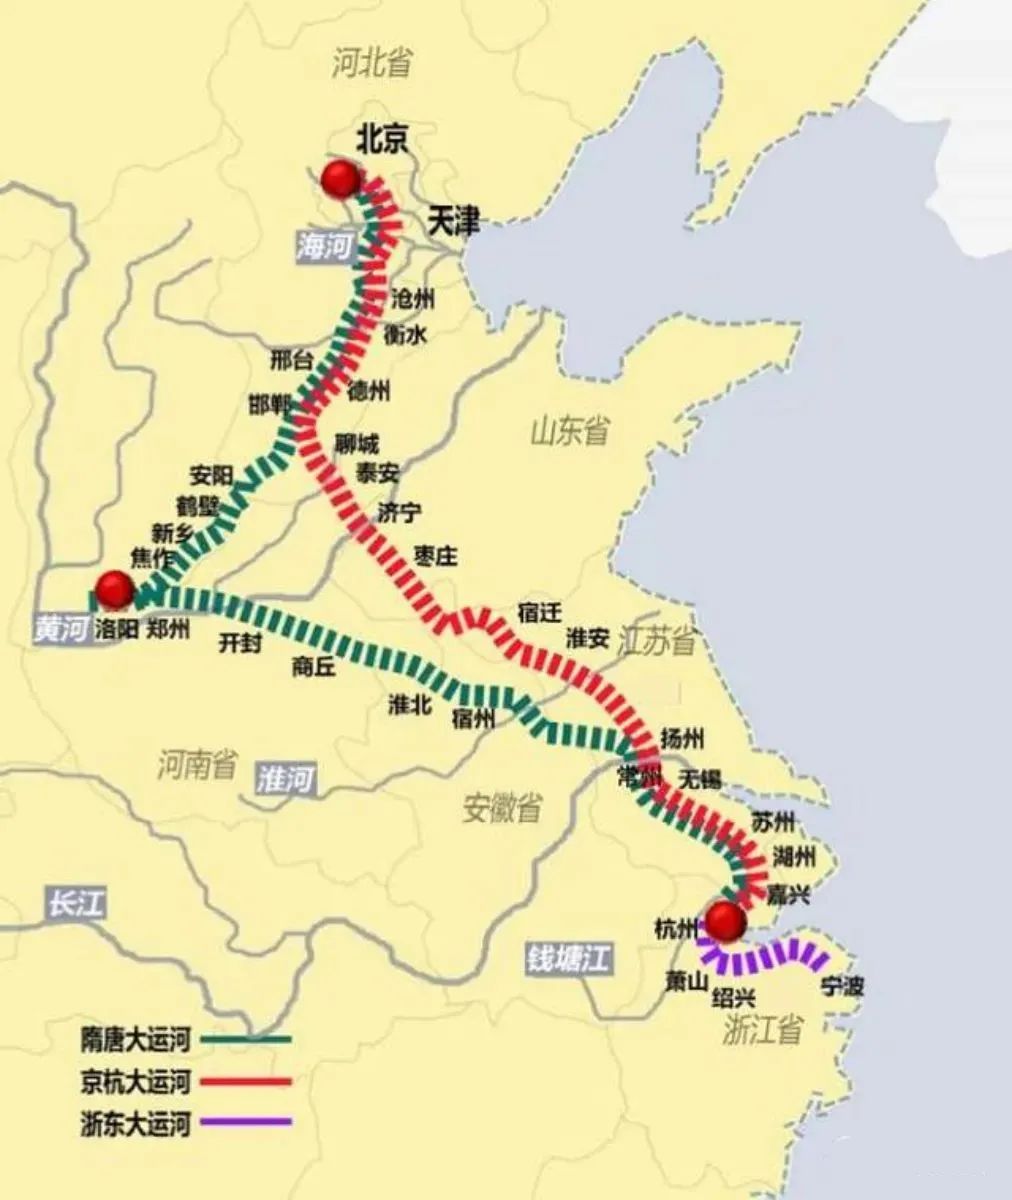 为什么你会觉得:大运河的终点,是杭州